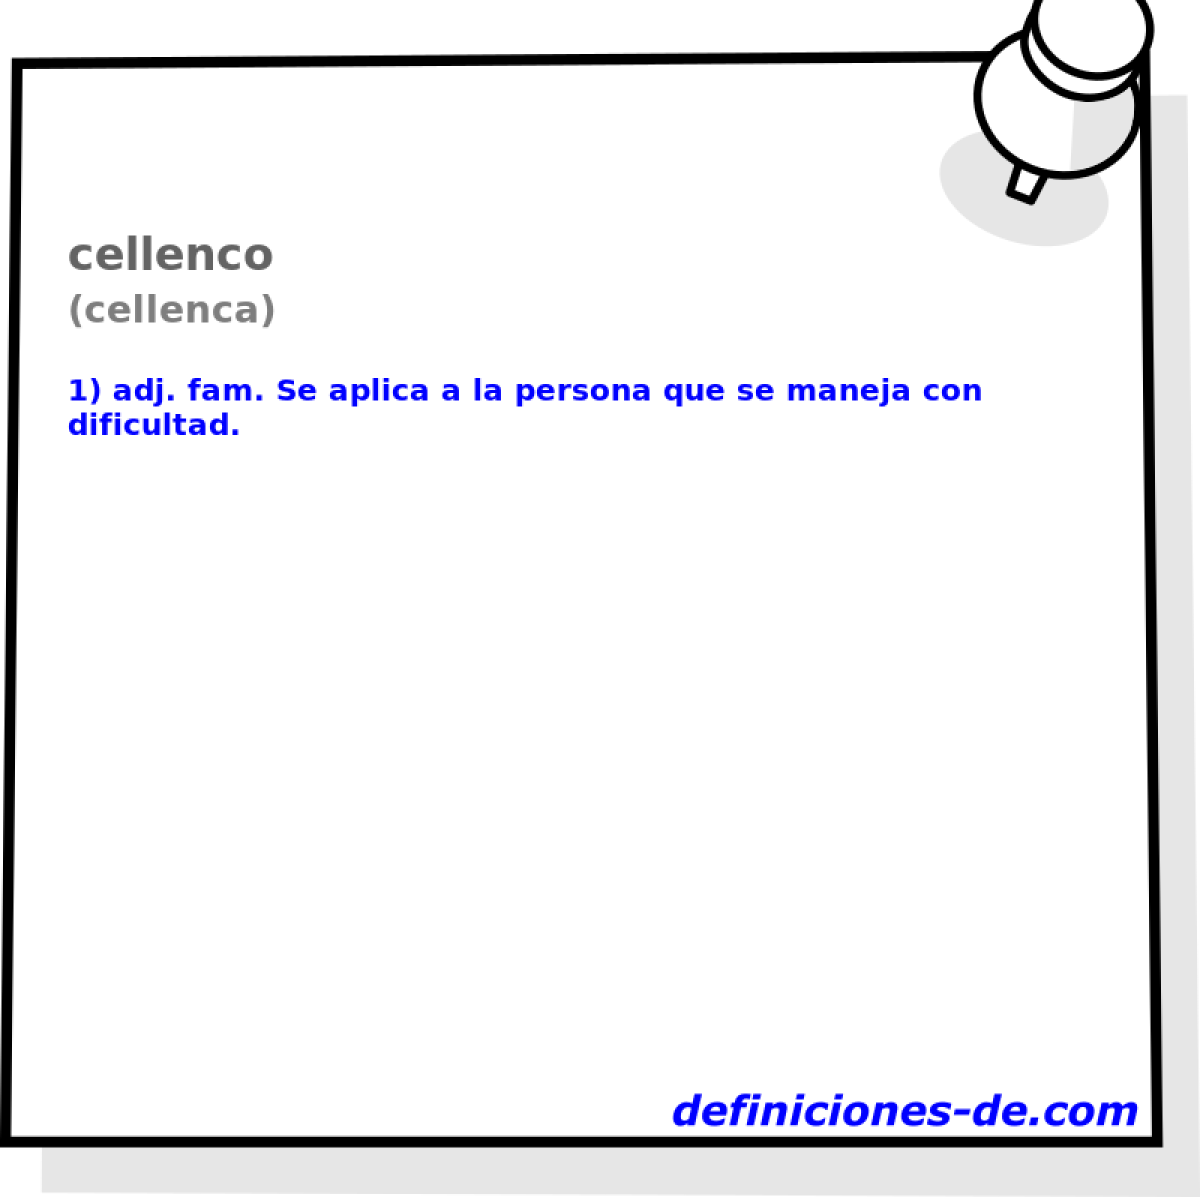 cellenco (cellenca)